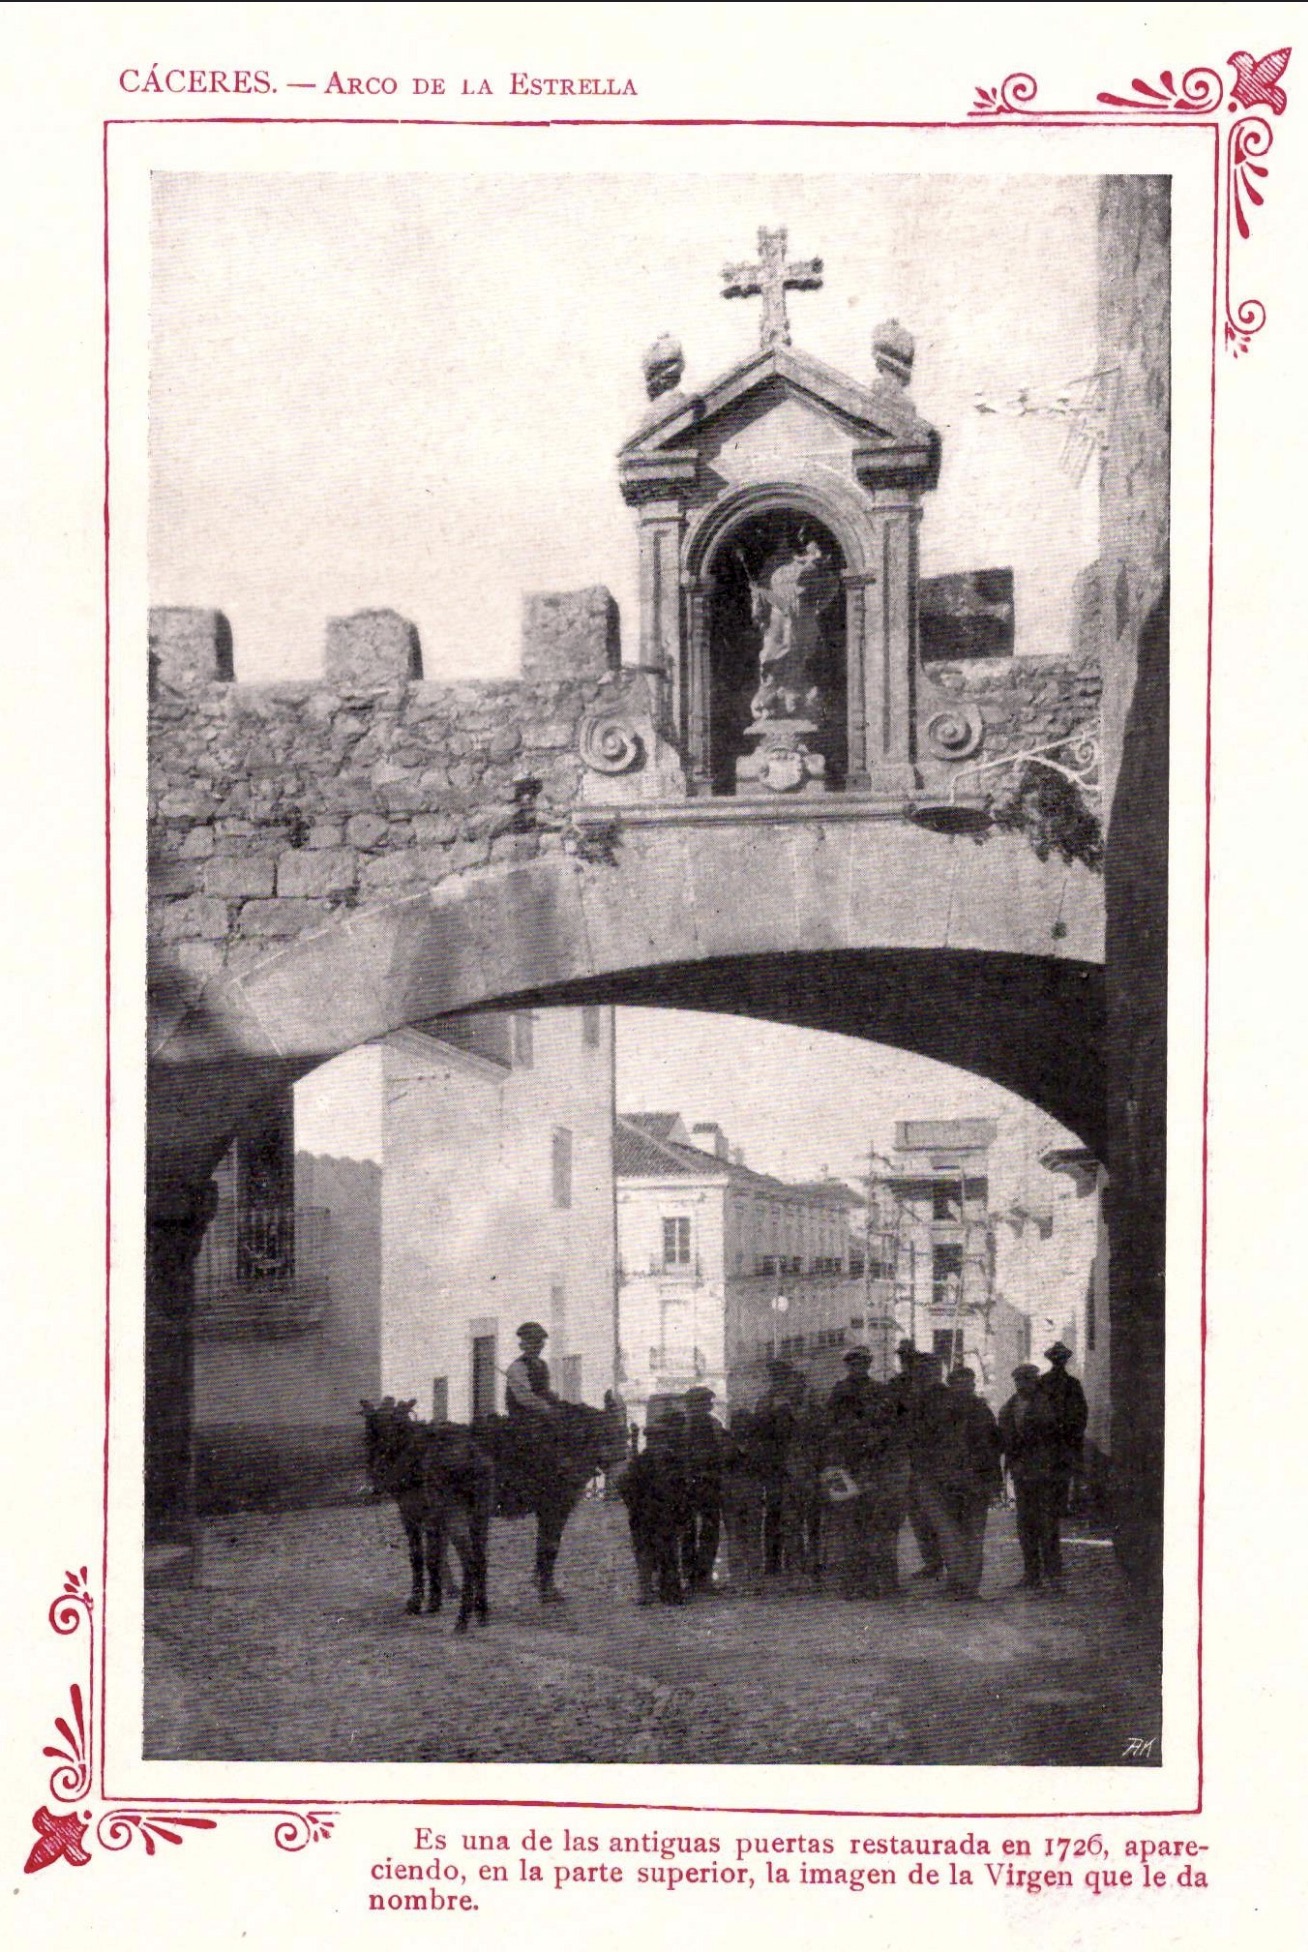 1910 - Cáceres portfolio